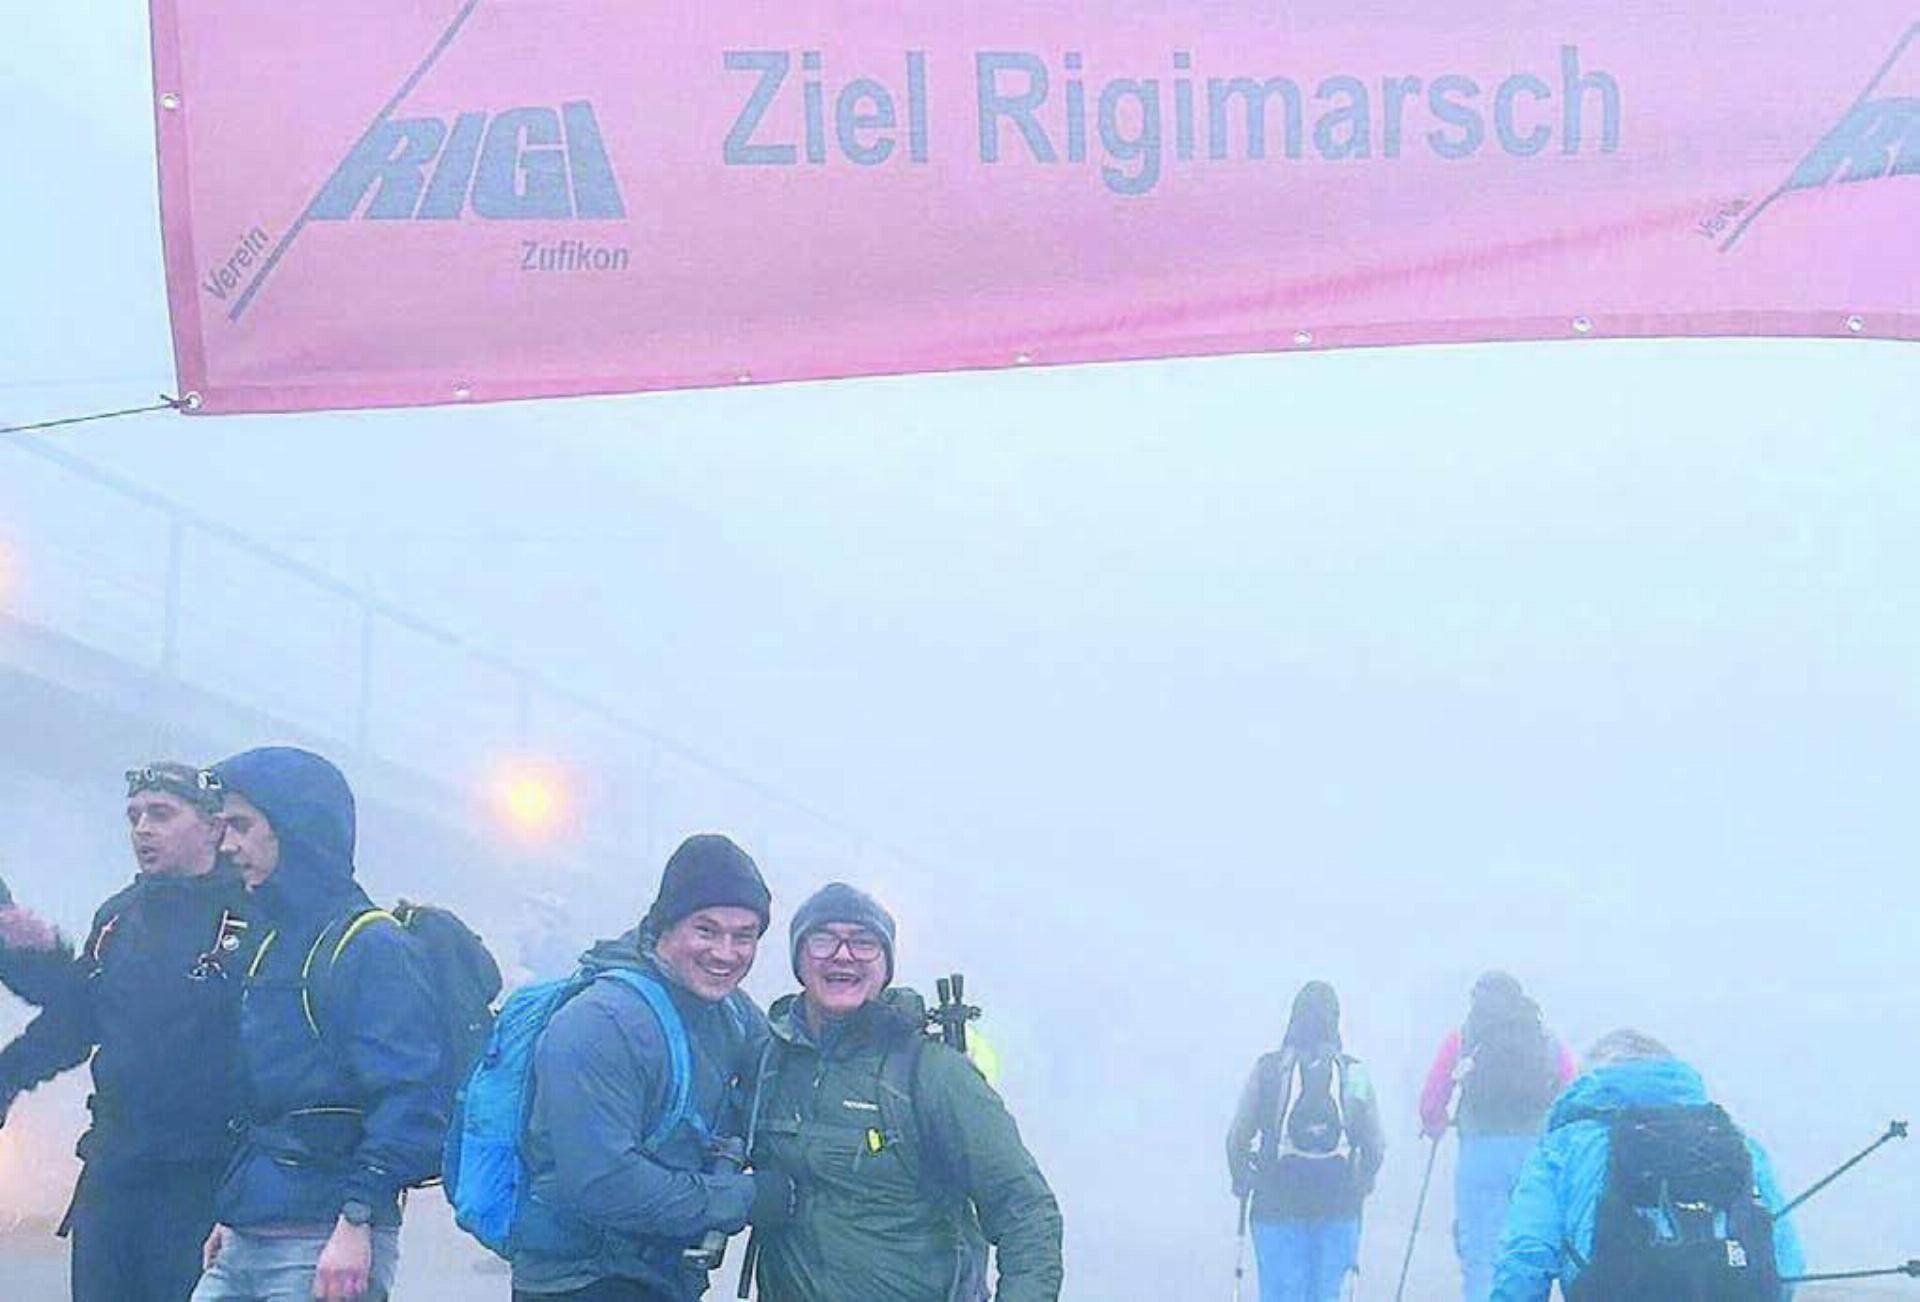 Das Ziel auf der Rigi erreichten viele – erschöpft und glücklich zugleich. Bilder: Roger Wetli (2) / zg (1)